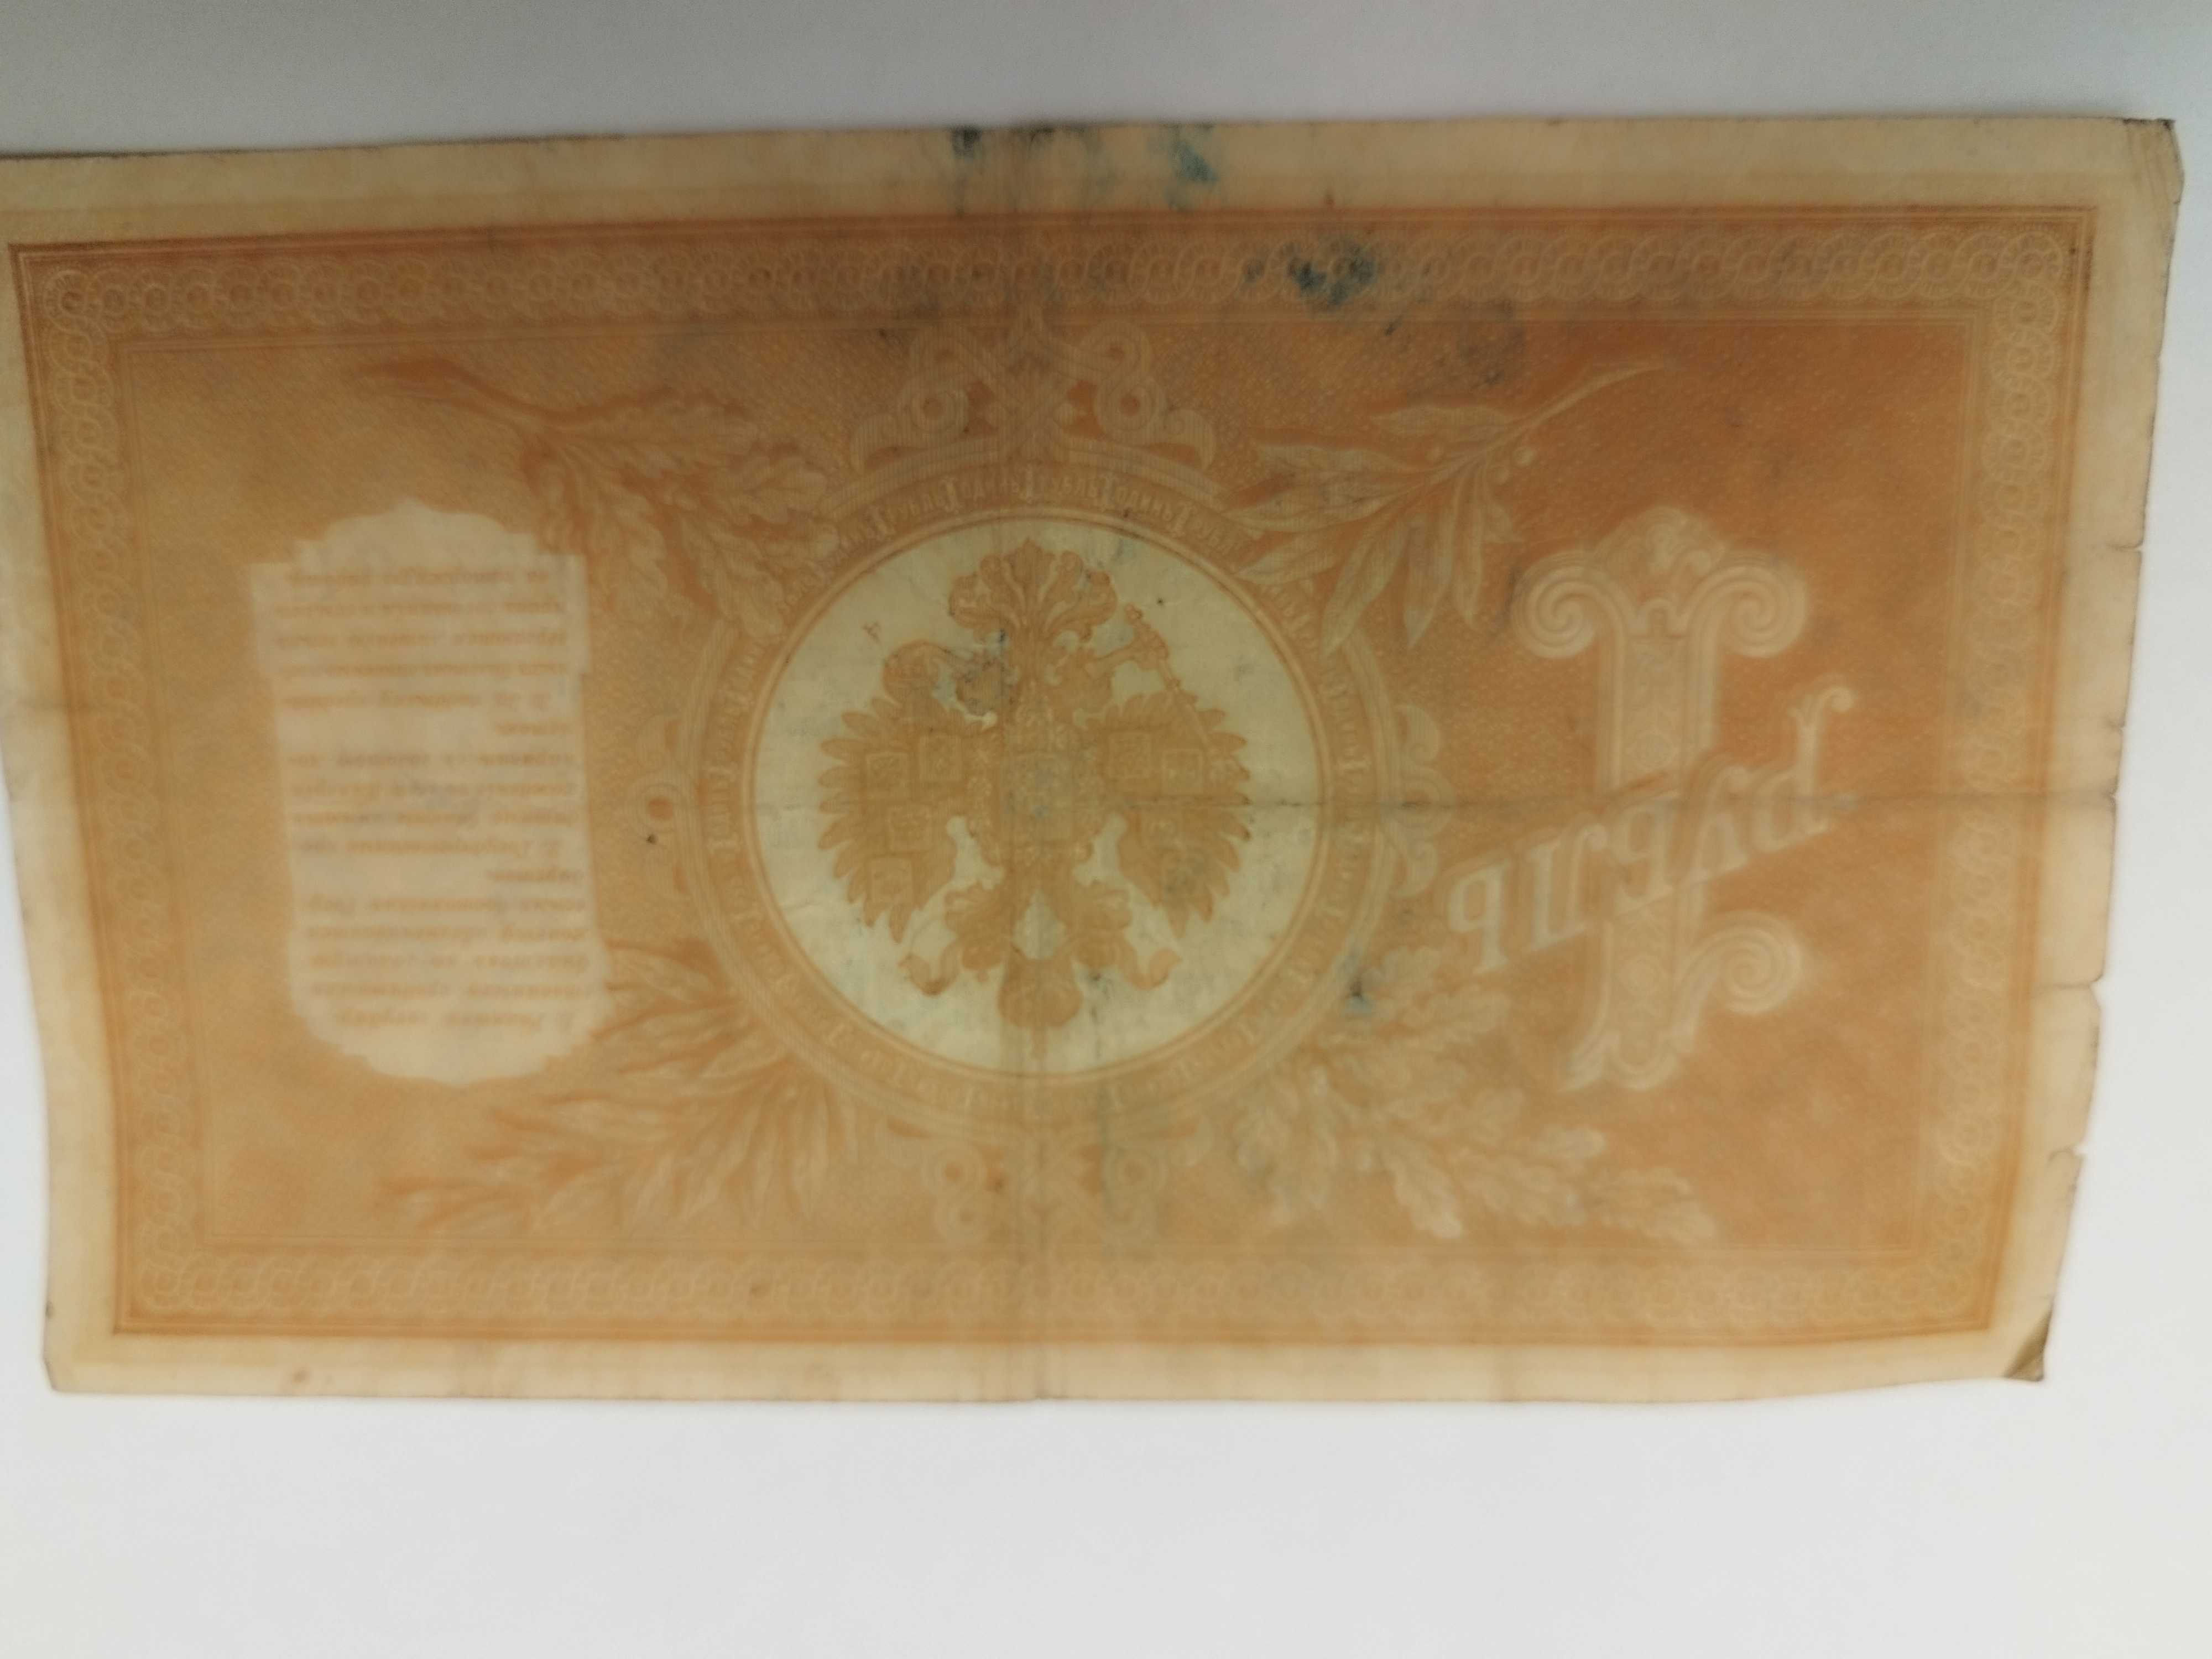 Banknot 1 rubel carski z 1898 roku sprzedam.